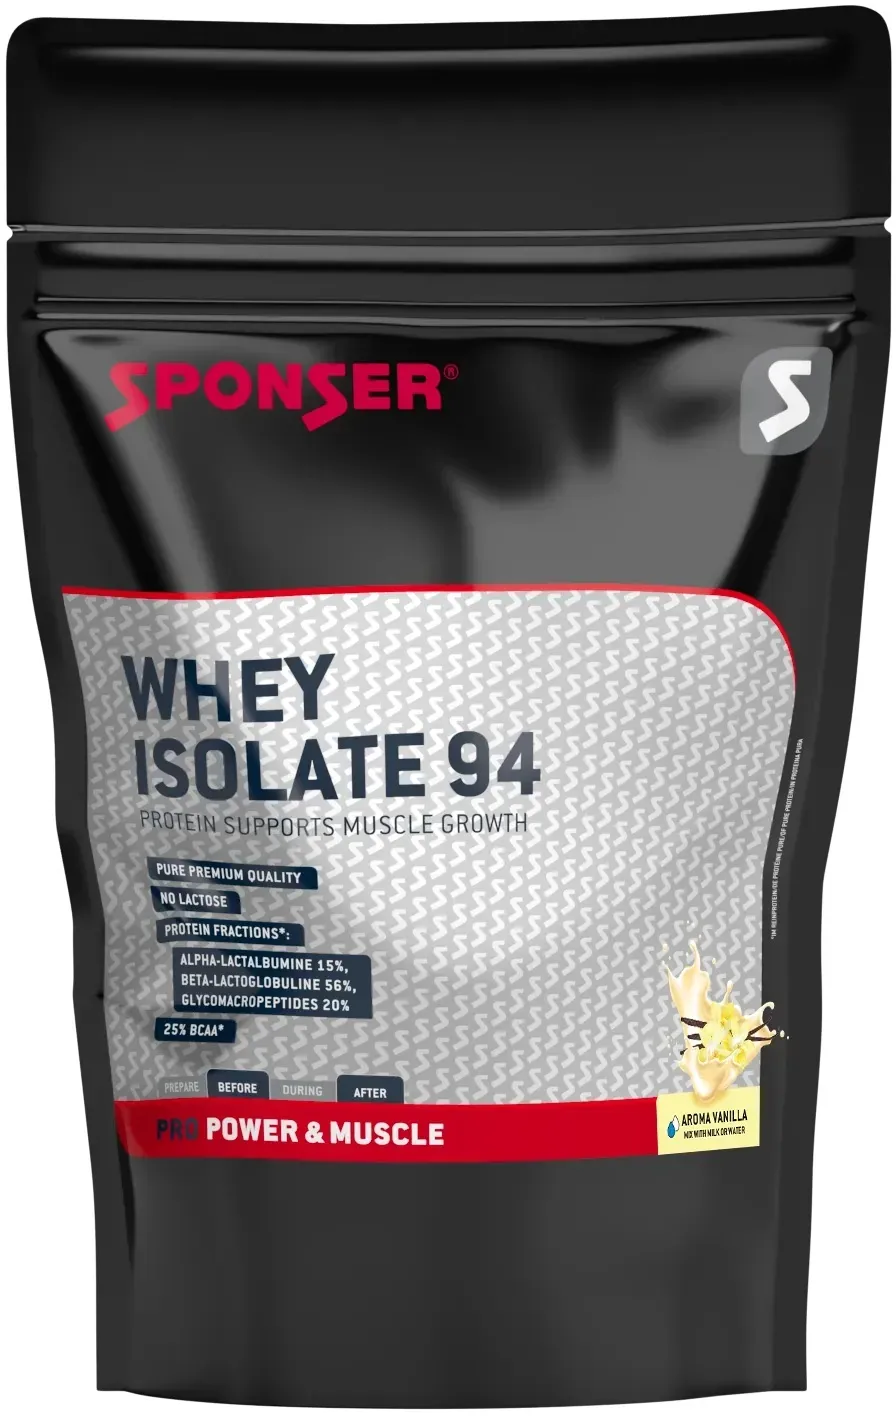 Sponser Whey Isolate 94 Proteinpulver (reines Whey Isolate CFM, max. Eiweißgehalt, laktosefrei) Vanille 1500g Stehbeutel